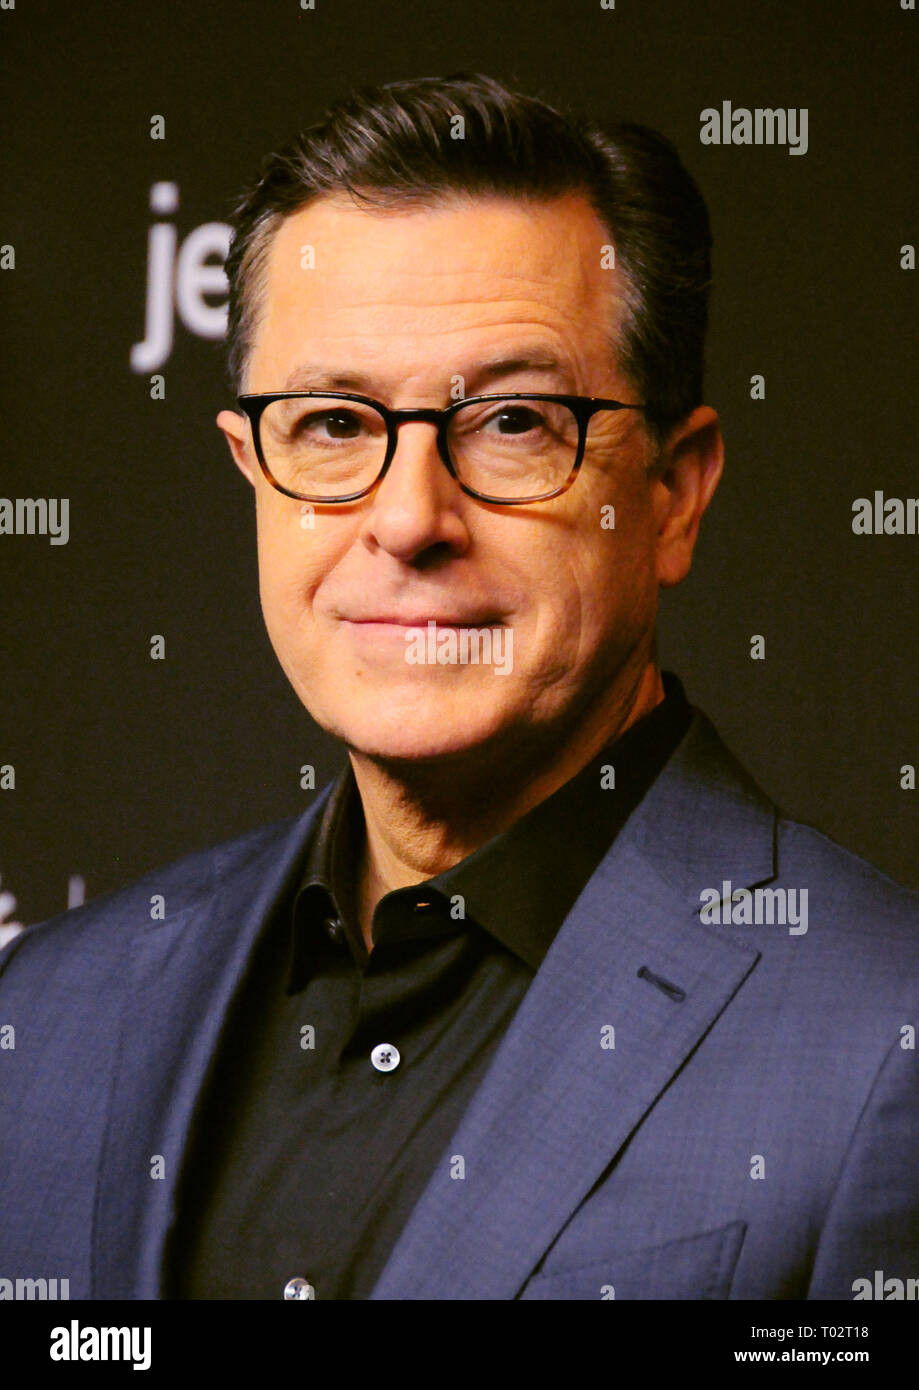 Kalifornien, USA. 16. März 2019. Tv-Persönlichkeit Stephen Colbert besucht" Ein Abend mit Stephen Colbert' an PaleyFest Los Angeles 2019 am 16. März 2019 an den Dolby Theatre in Hollywood, Kalifornien. Foto von Barry King/Alamy leben Nachrichten Stockfoto